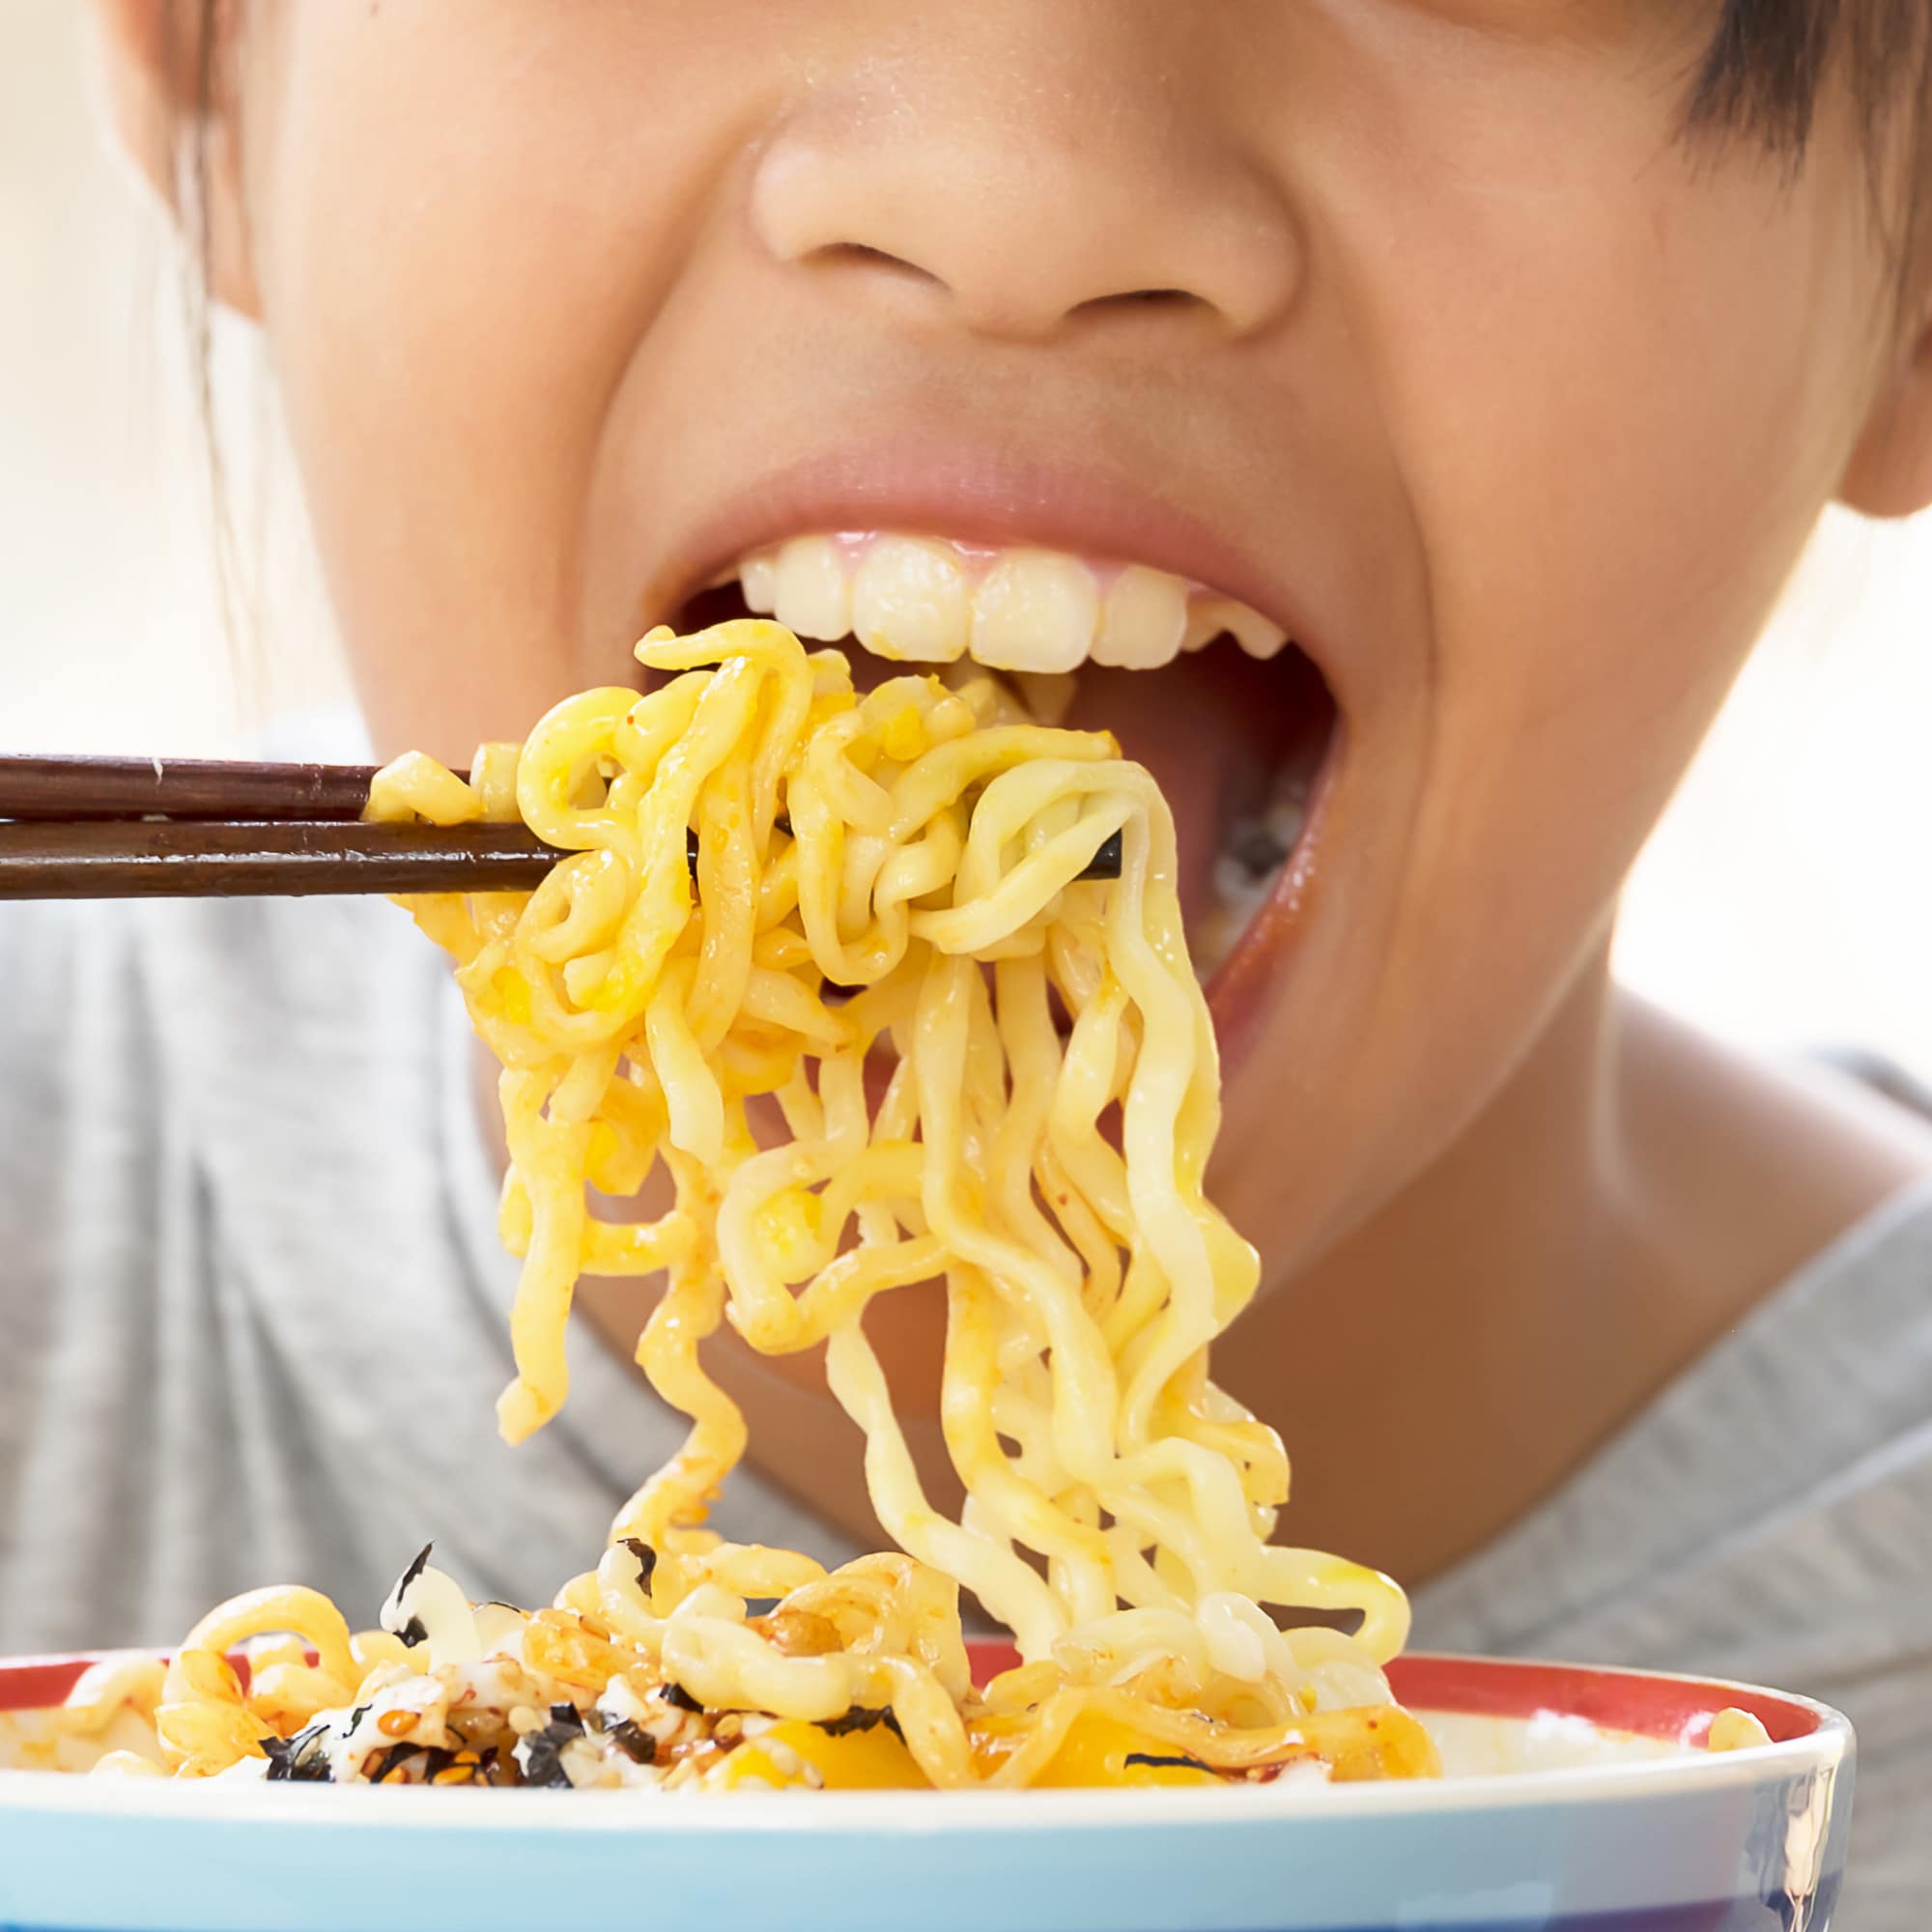 Nahaufnahme: Ein Kind isst chinesische Nudeln mit Stäbchen.